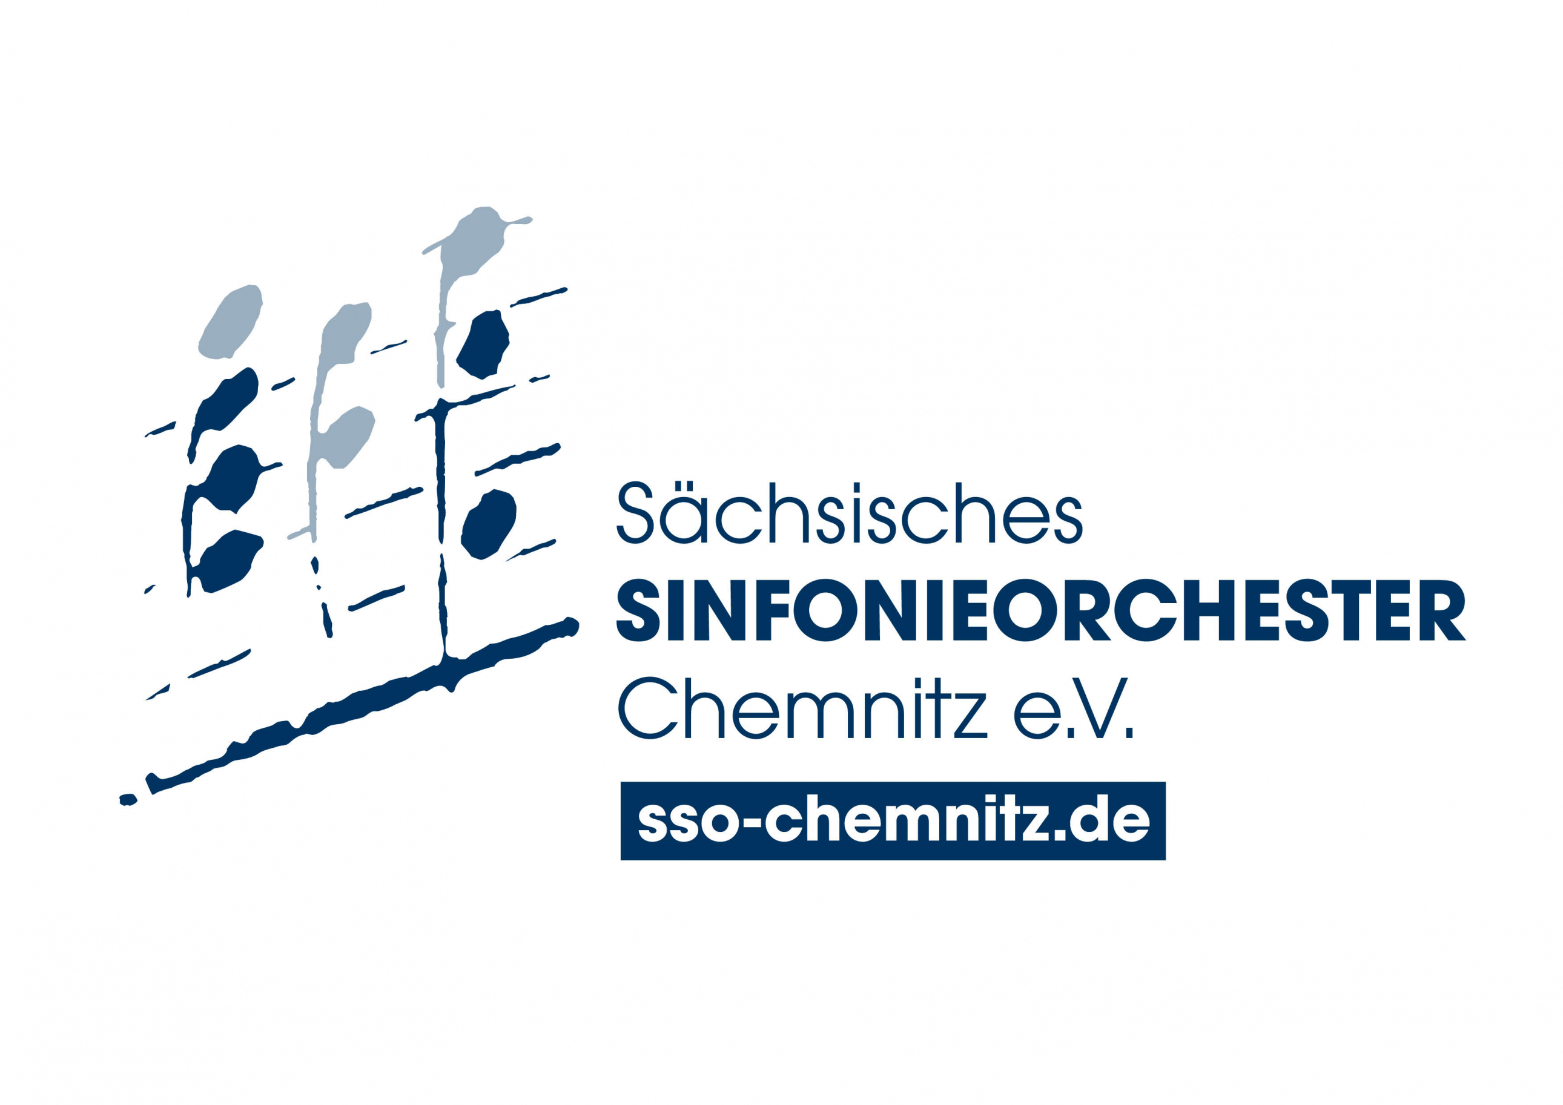 Sächsisches Sinfonieorchester Chemnitz